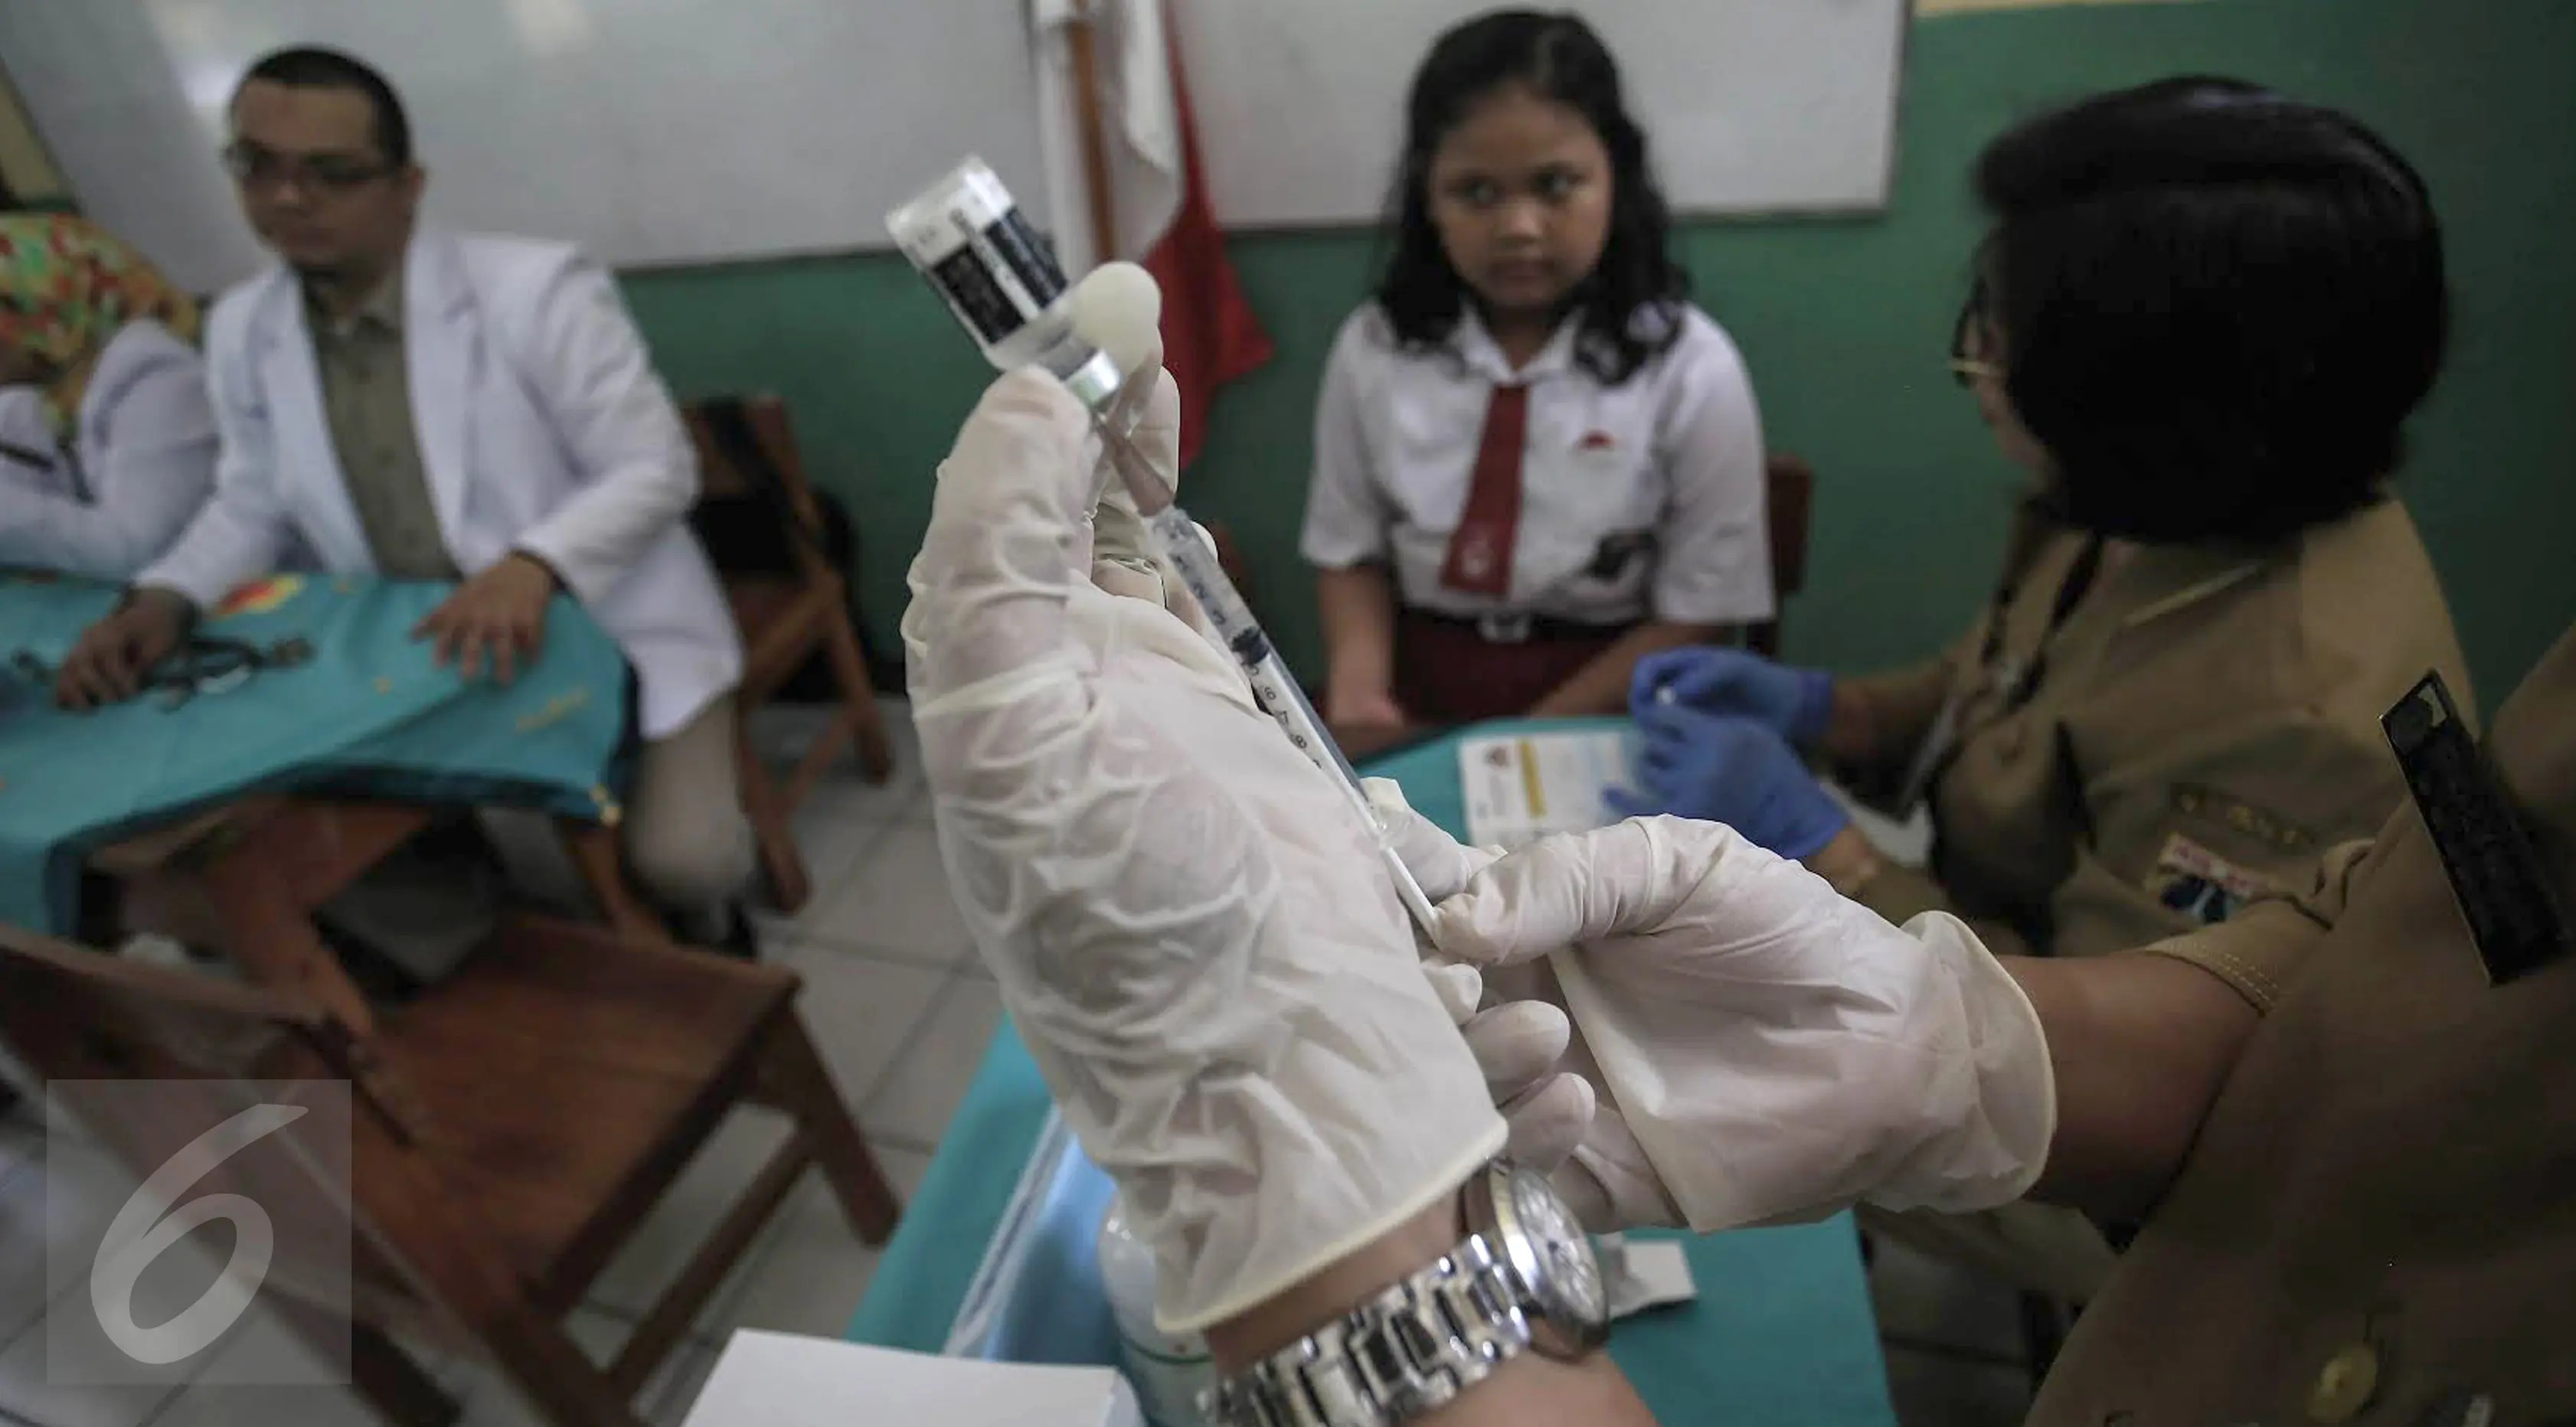 Dokter bersiap memberikan suntikan imunisasi di SDN 11 Pagi, Lubang Buaya, Jakarta, Selasa (4/10). Kegiatan ini untuk mewujudkan Indonesia bebas dari kanker serviks. (Liputan6.com/Faizal Fanani)